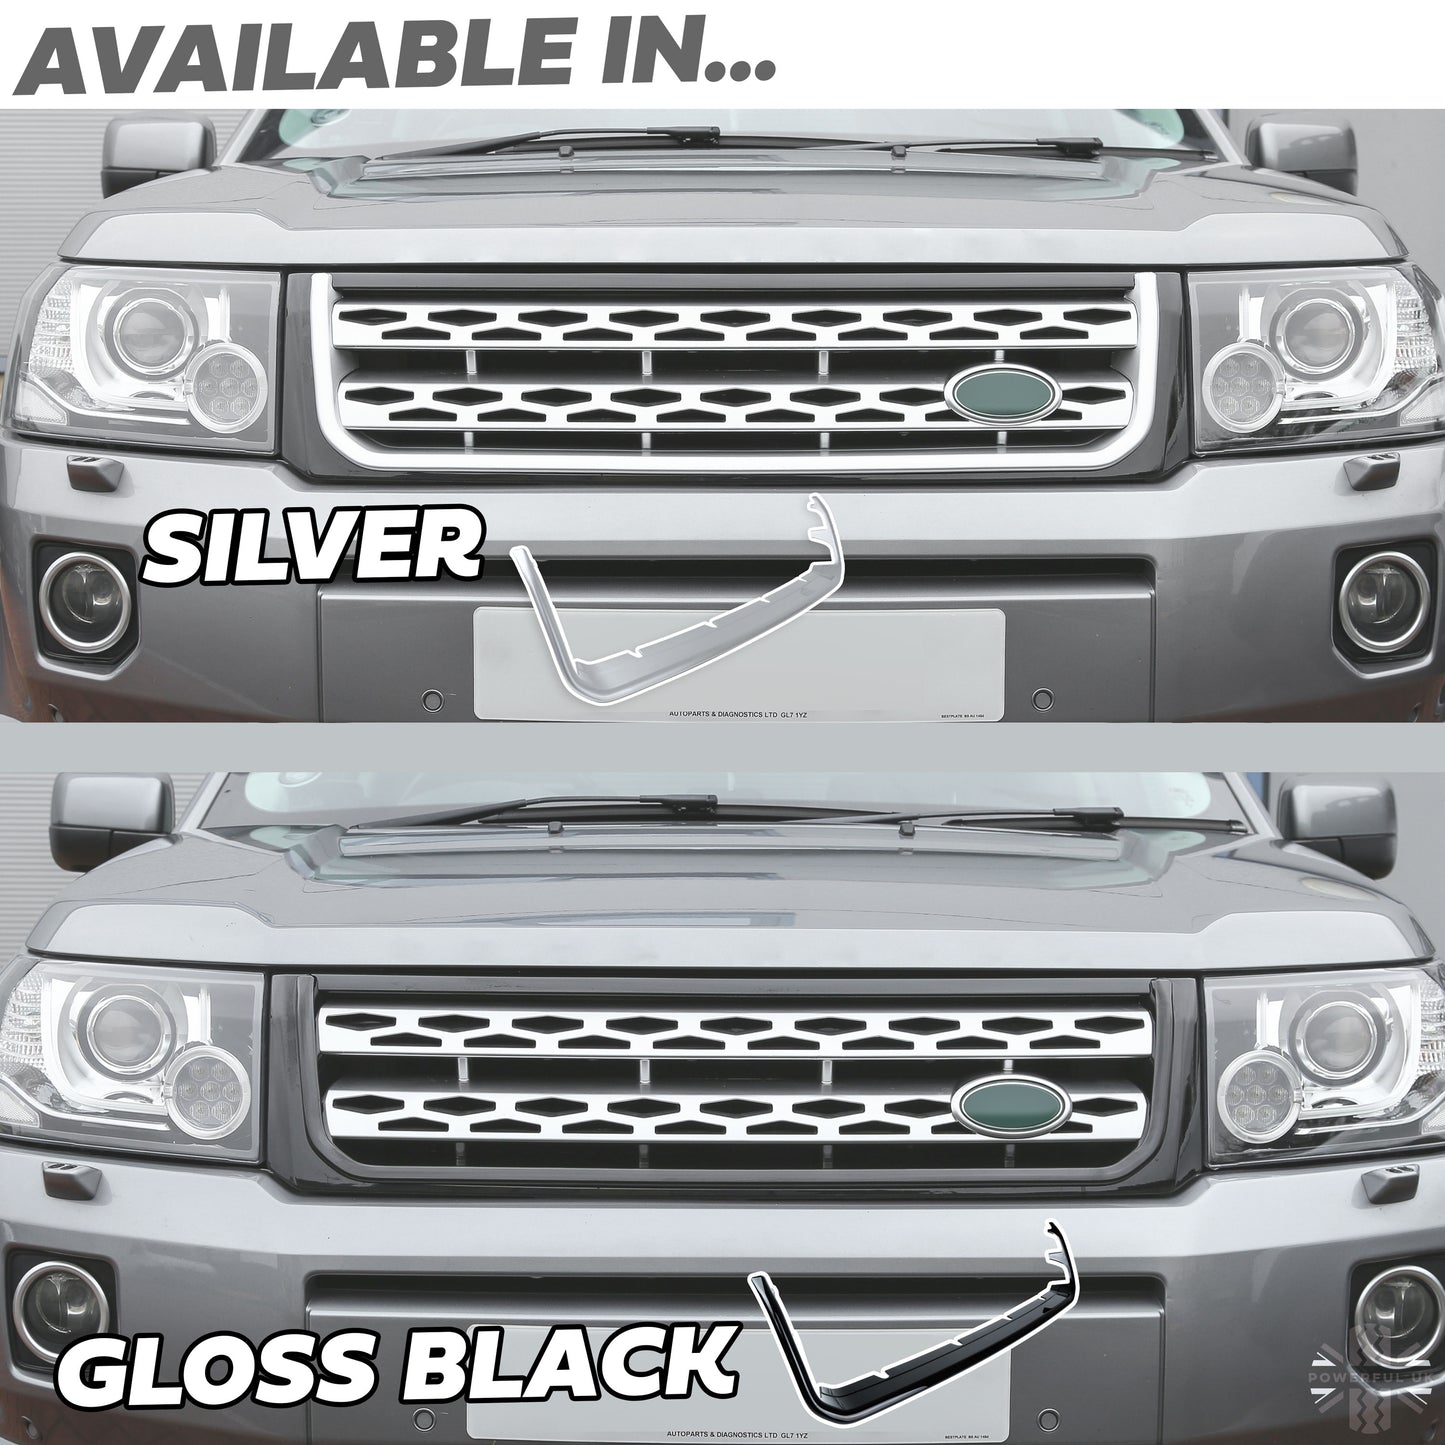 Front Grille Cover Trim for Land Rover Freelander 2 (2012+) - Black